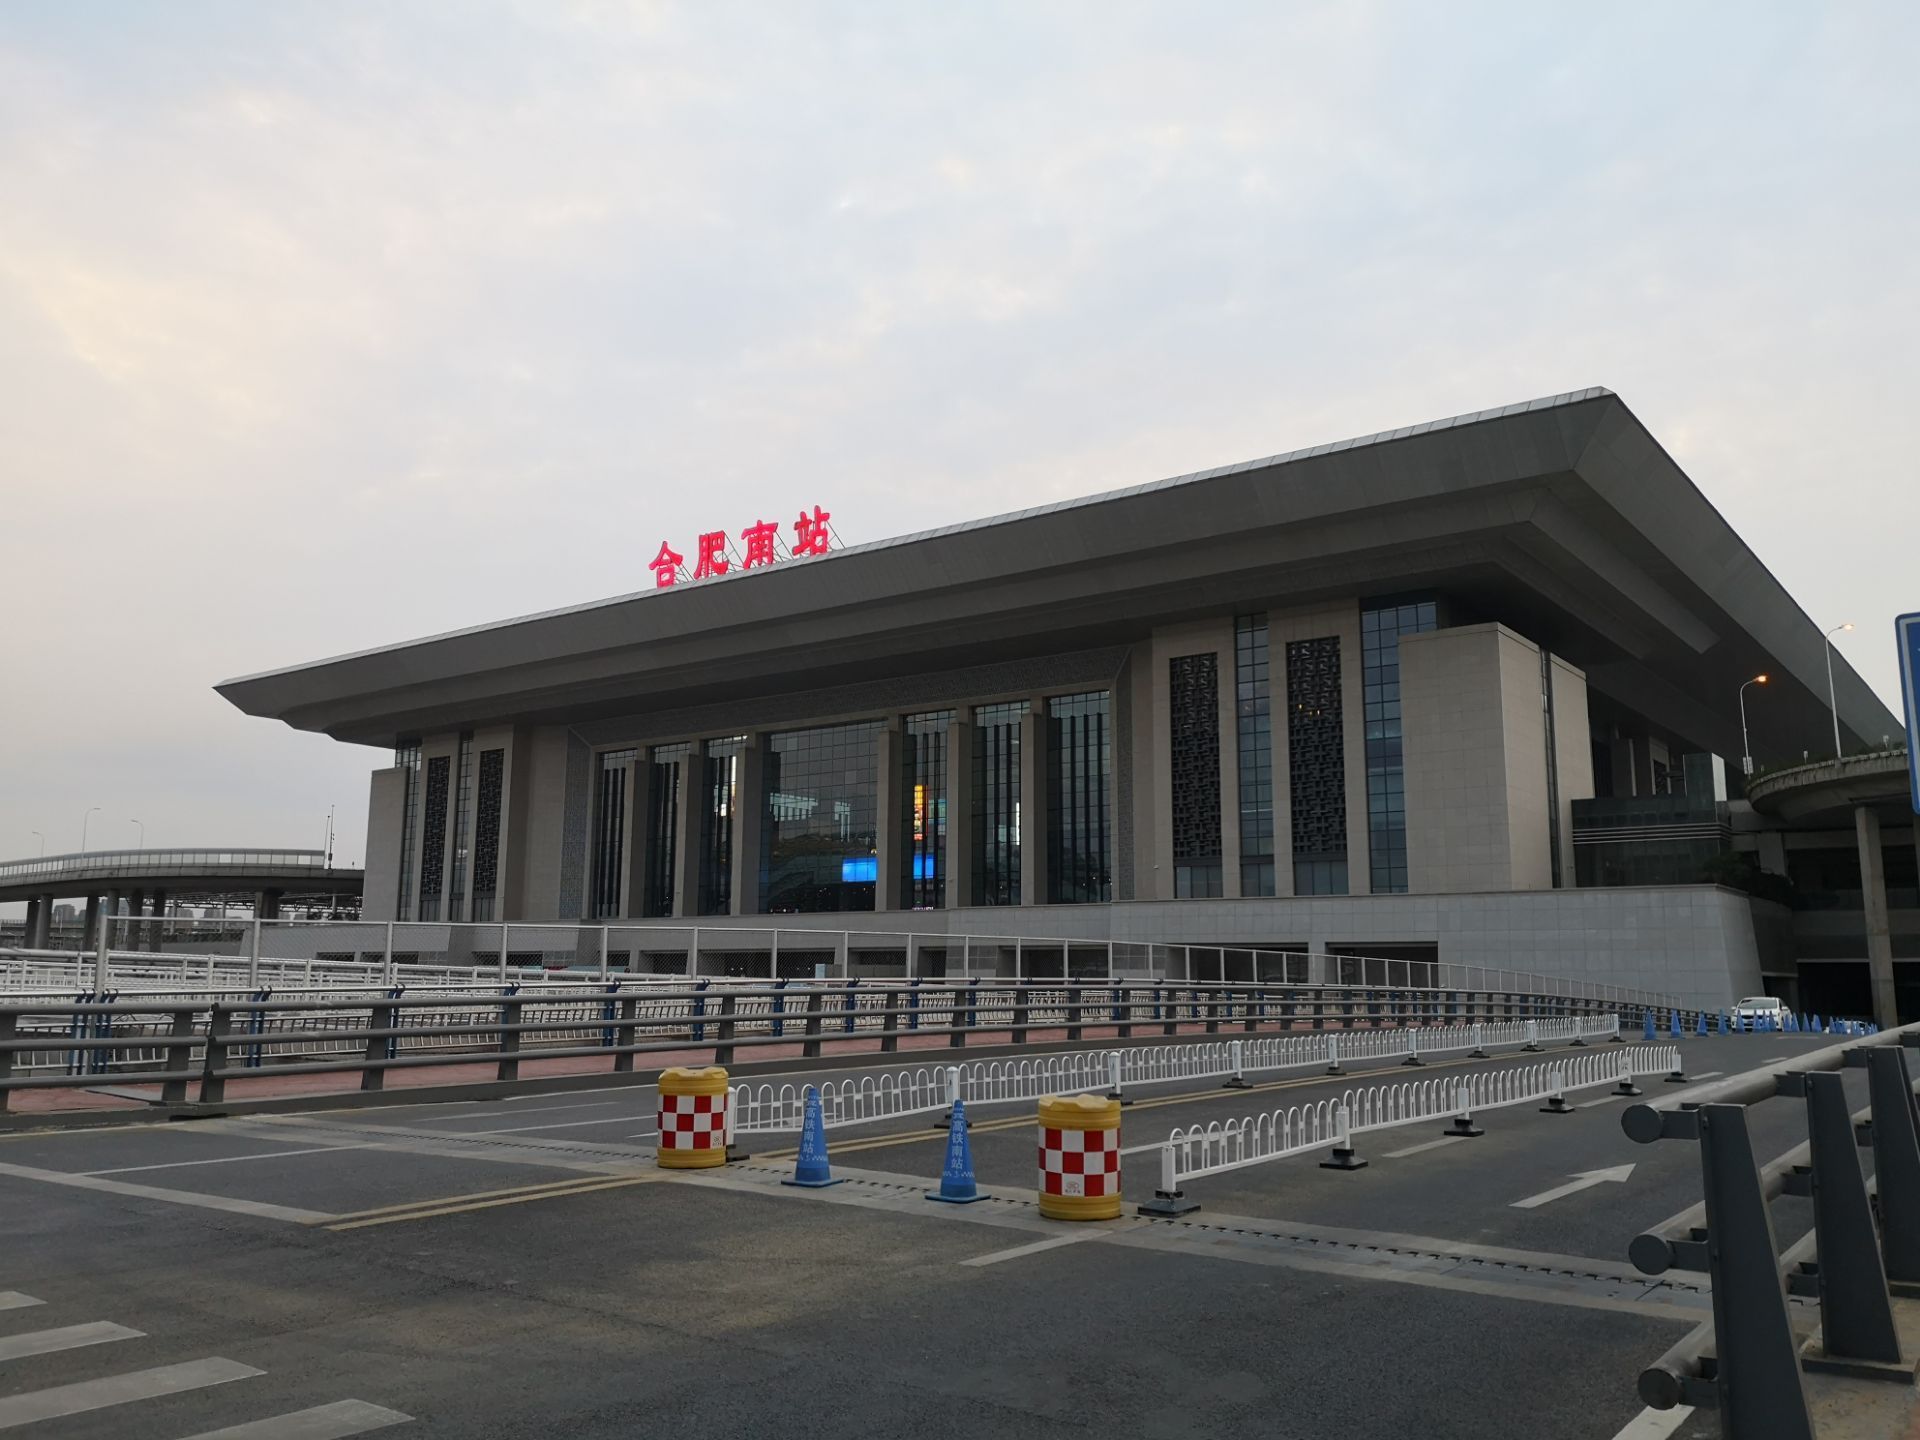 【携程攻略】合肥南站，合肥南站建的非常好，特别大，而且出租车位置非常有特色。